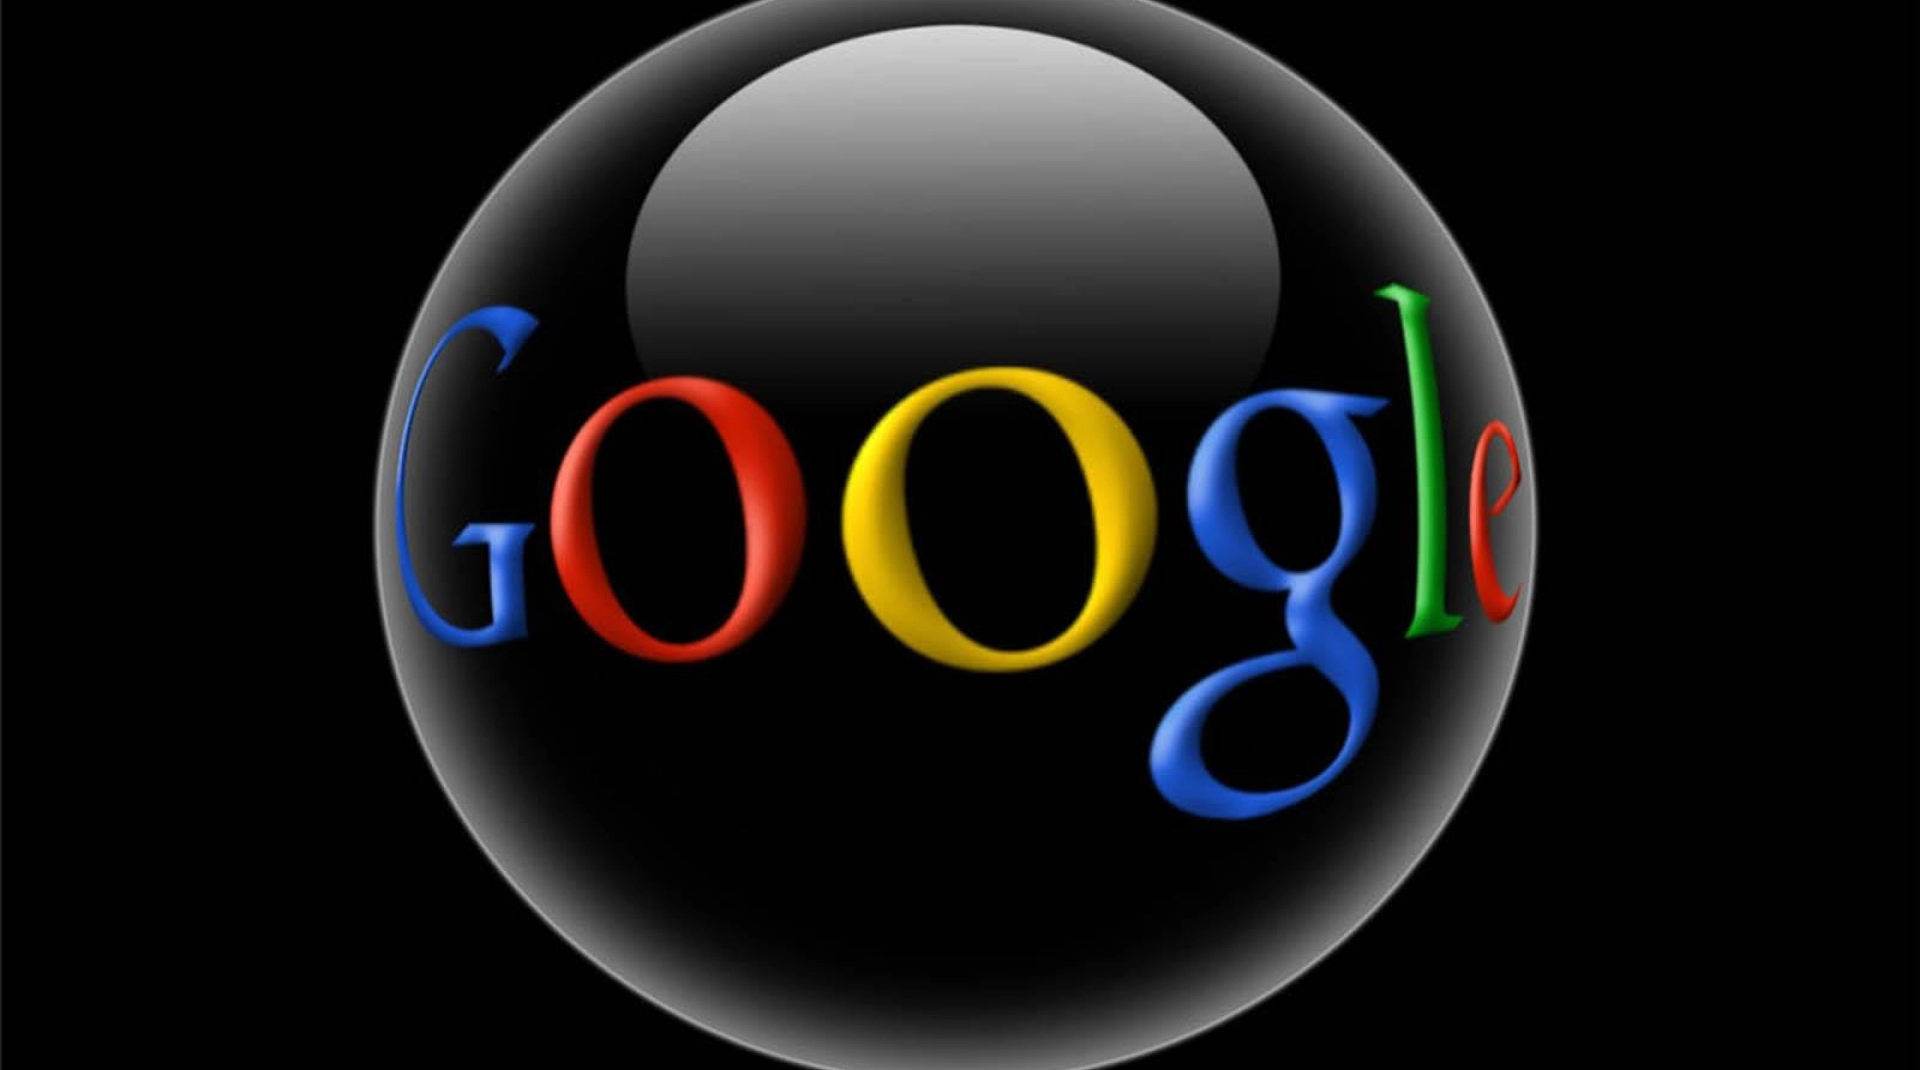 Что такое Google - обзор и функции популярной поисковой системы